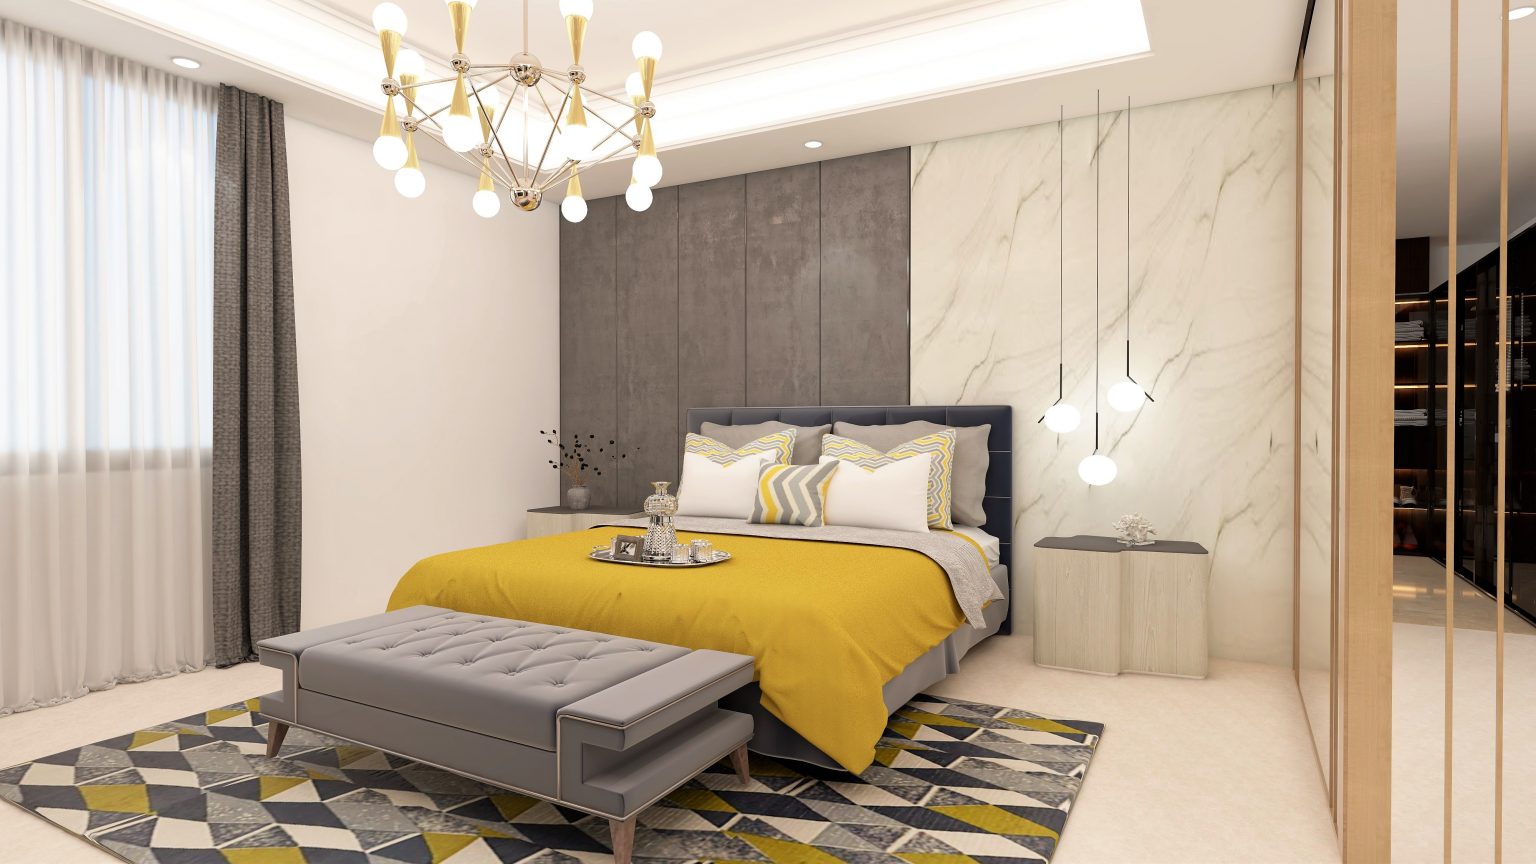 Best Master Bedroom Design Ideas 1536x864 